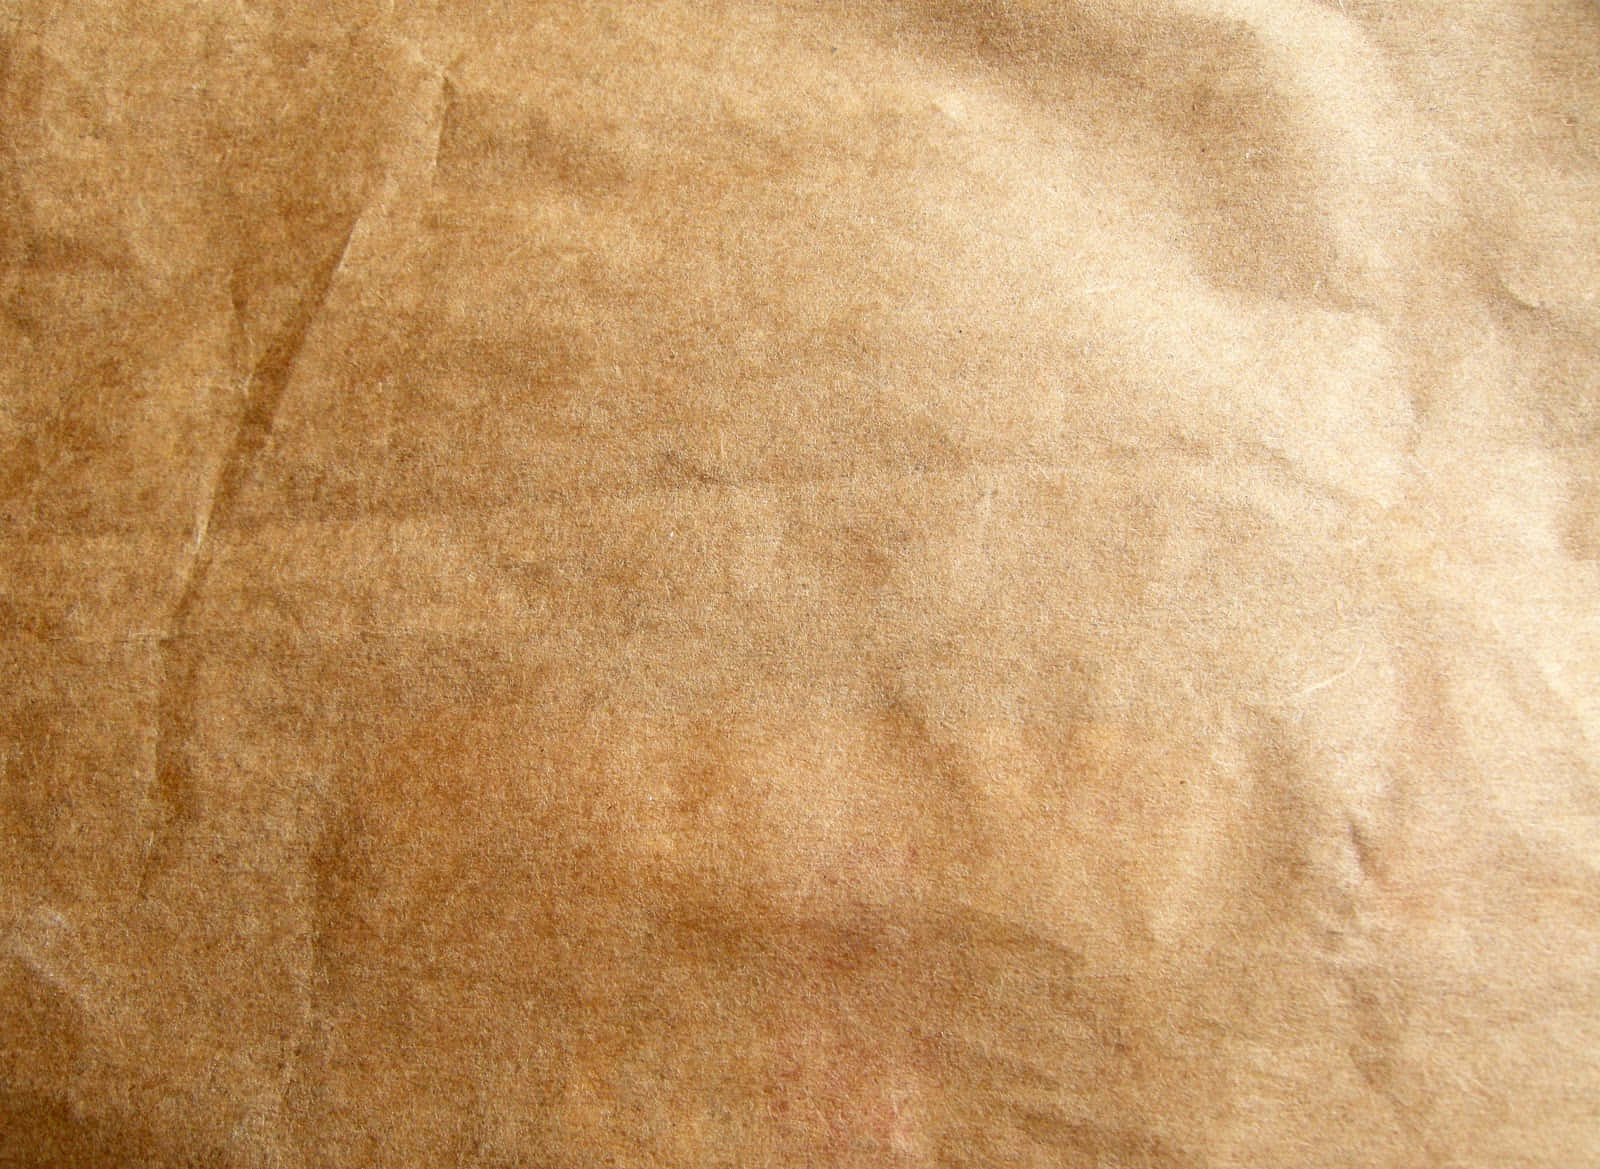 Antique Grunge Paper Texture Background